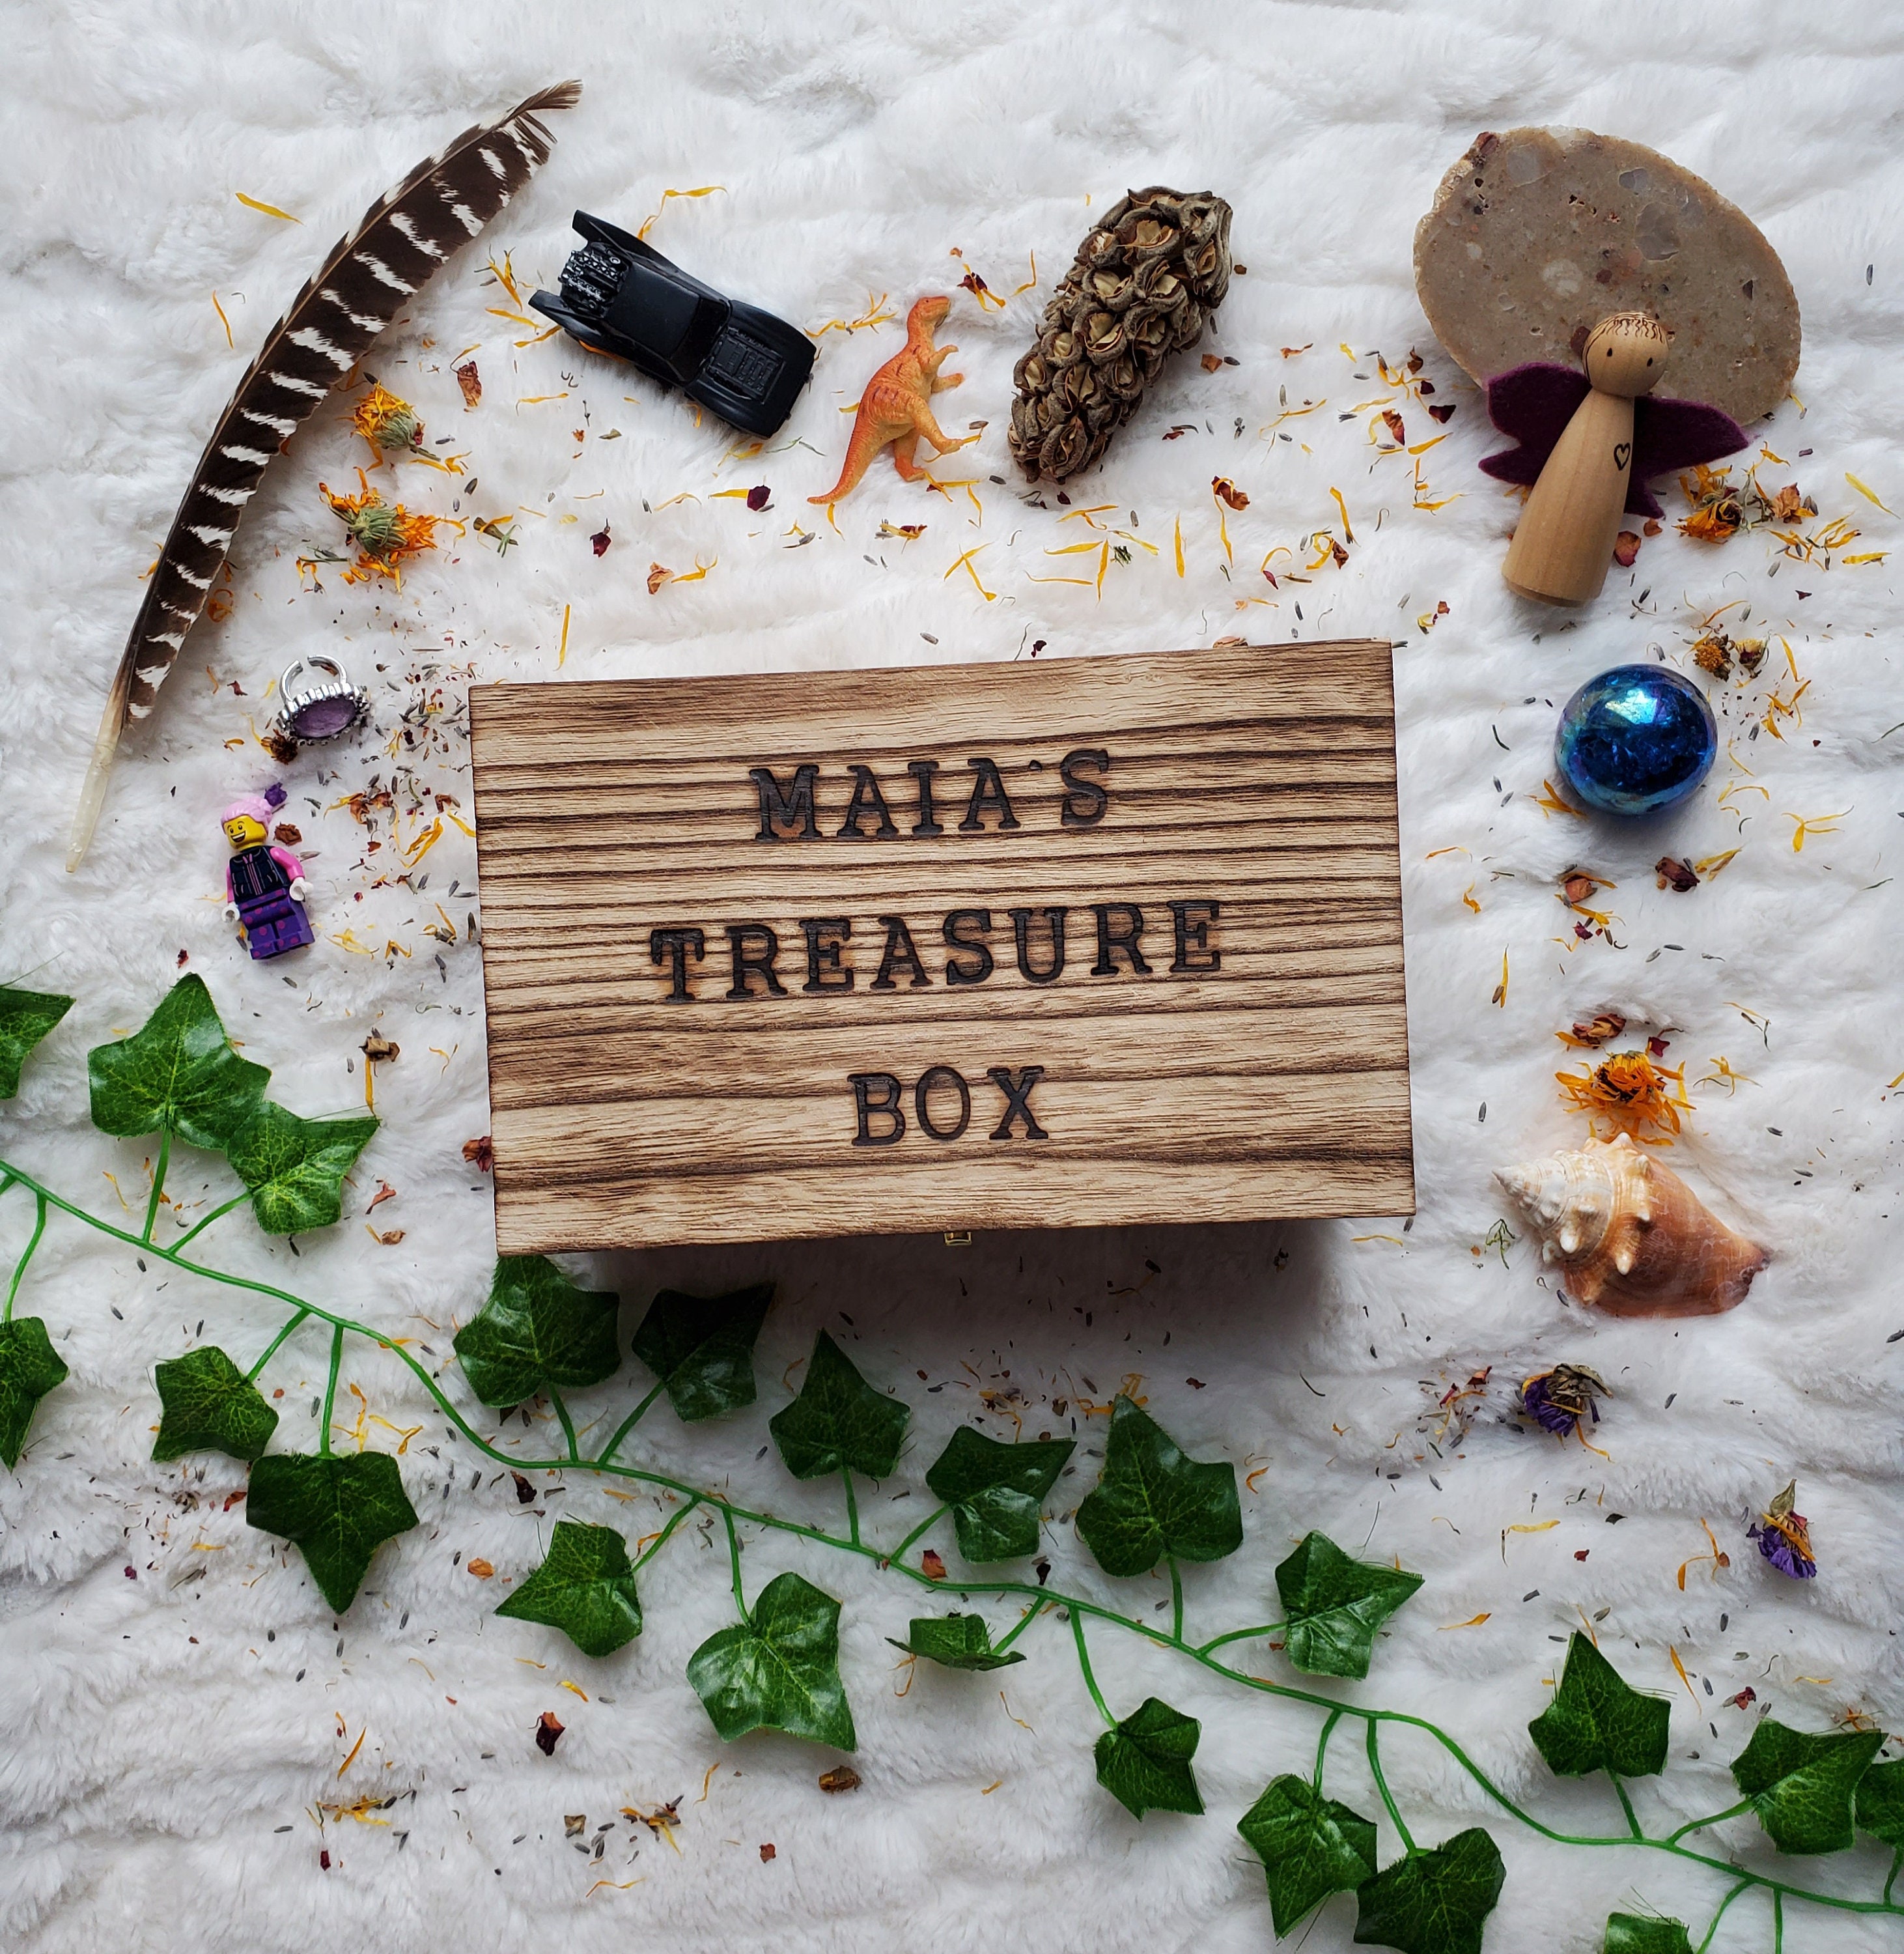 Sparkle Treasure Box - Toy Box Michigan family MI toy store